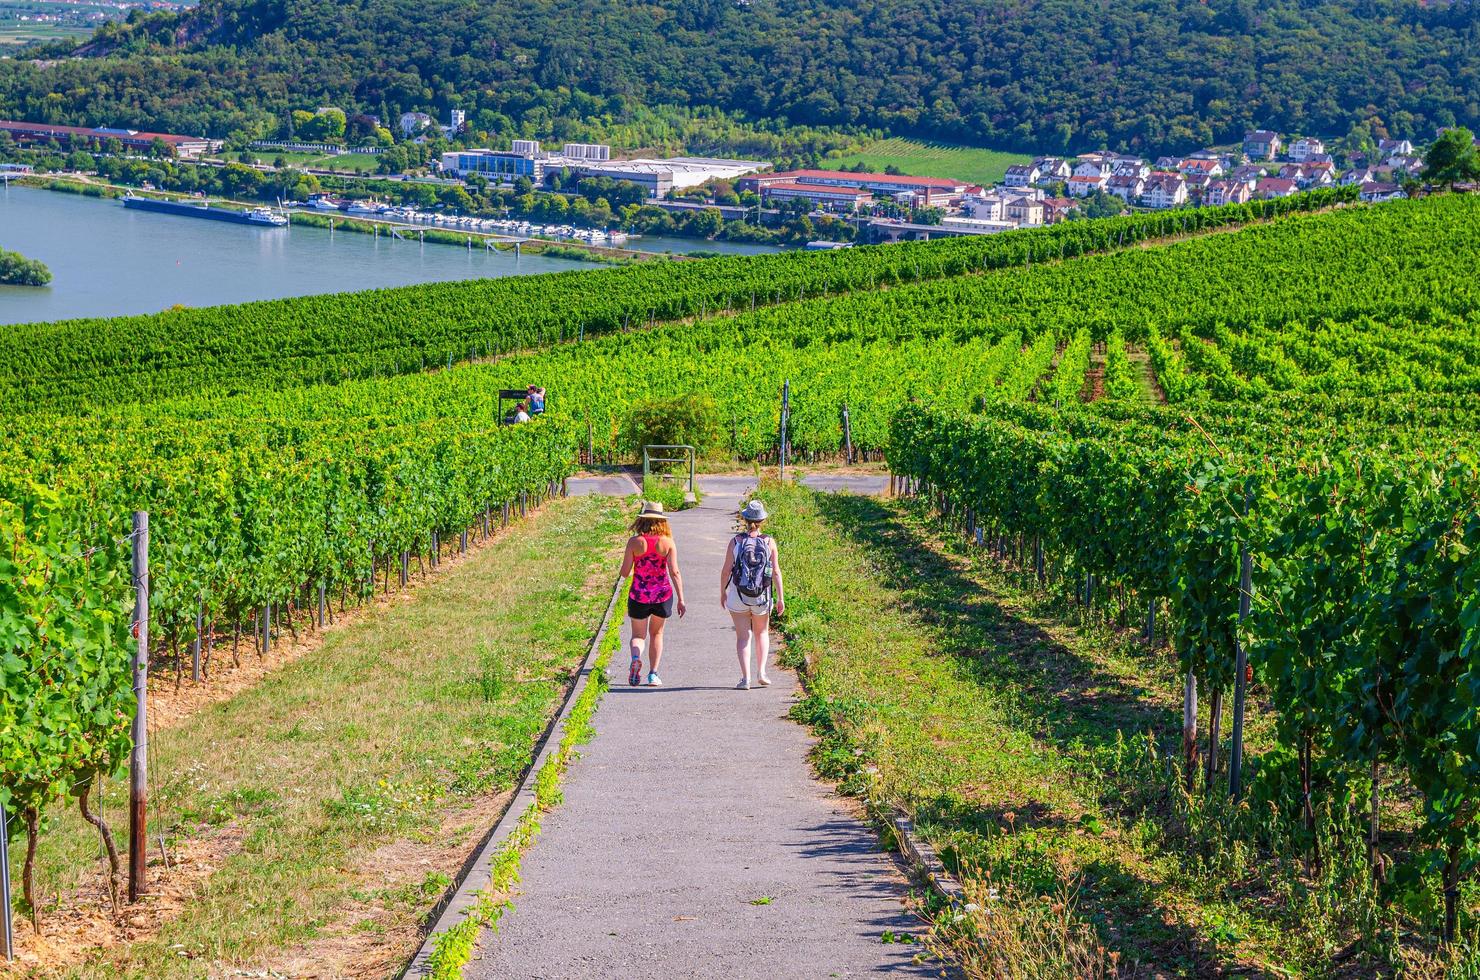 Ruudsheim am rhein, duitsland, 24 augustus 2019 toeristen lopen over padweg in wijngaarden groene velden rijnkloof riviervallei heuvels foto